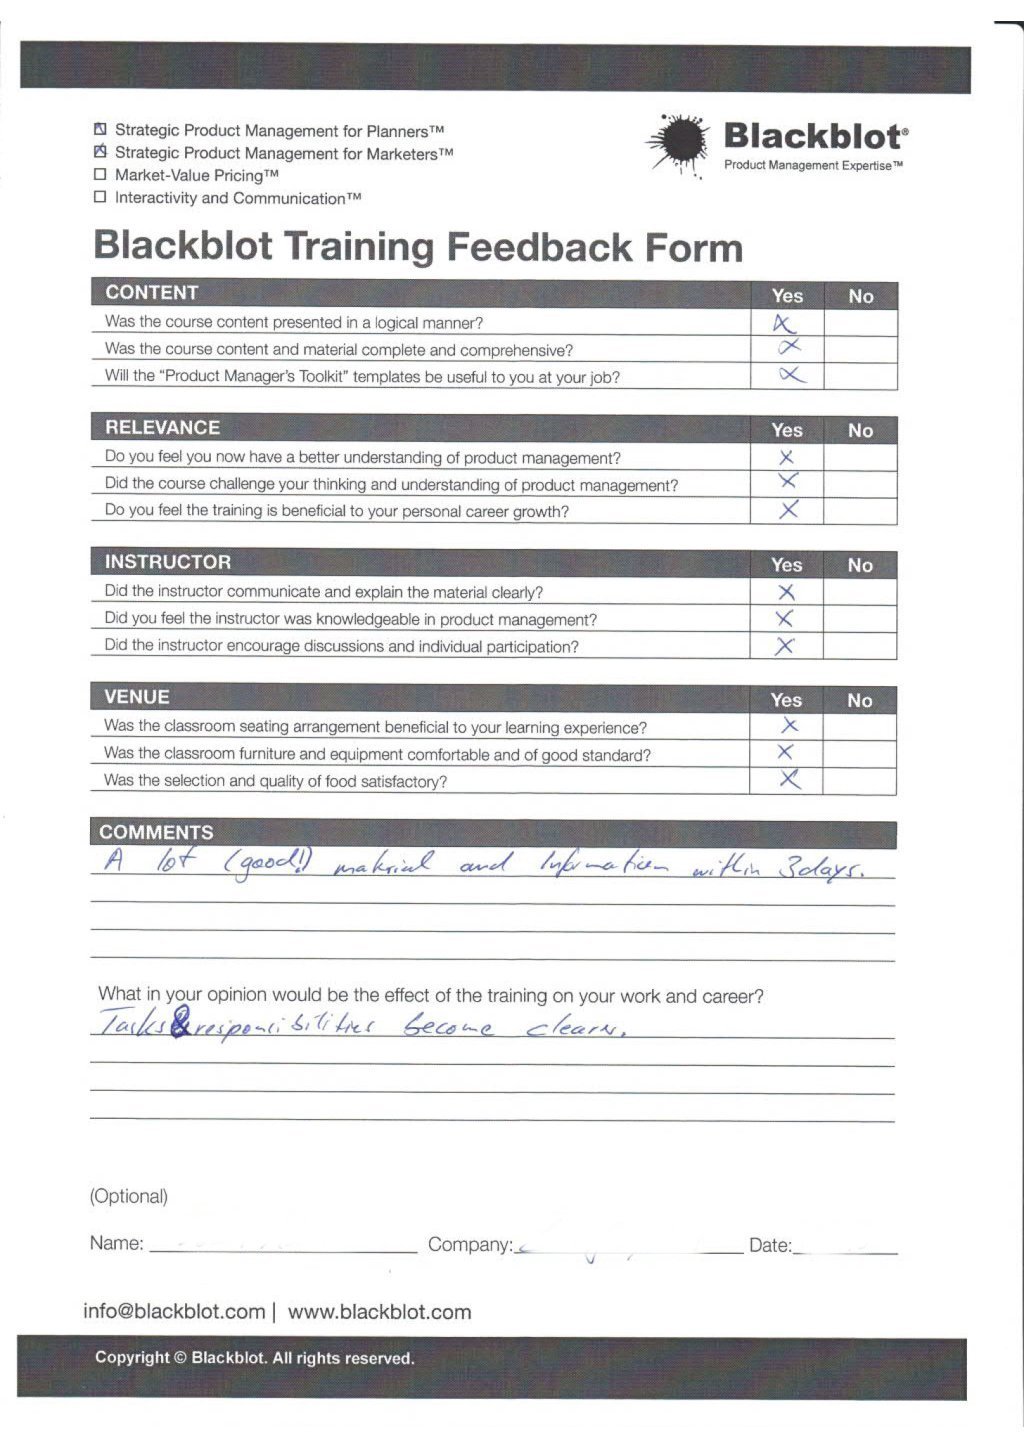 Blackblot: Blackblot_Strategic_Product_Management_Feedback_Form_020.jpg